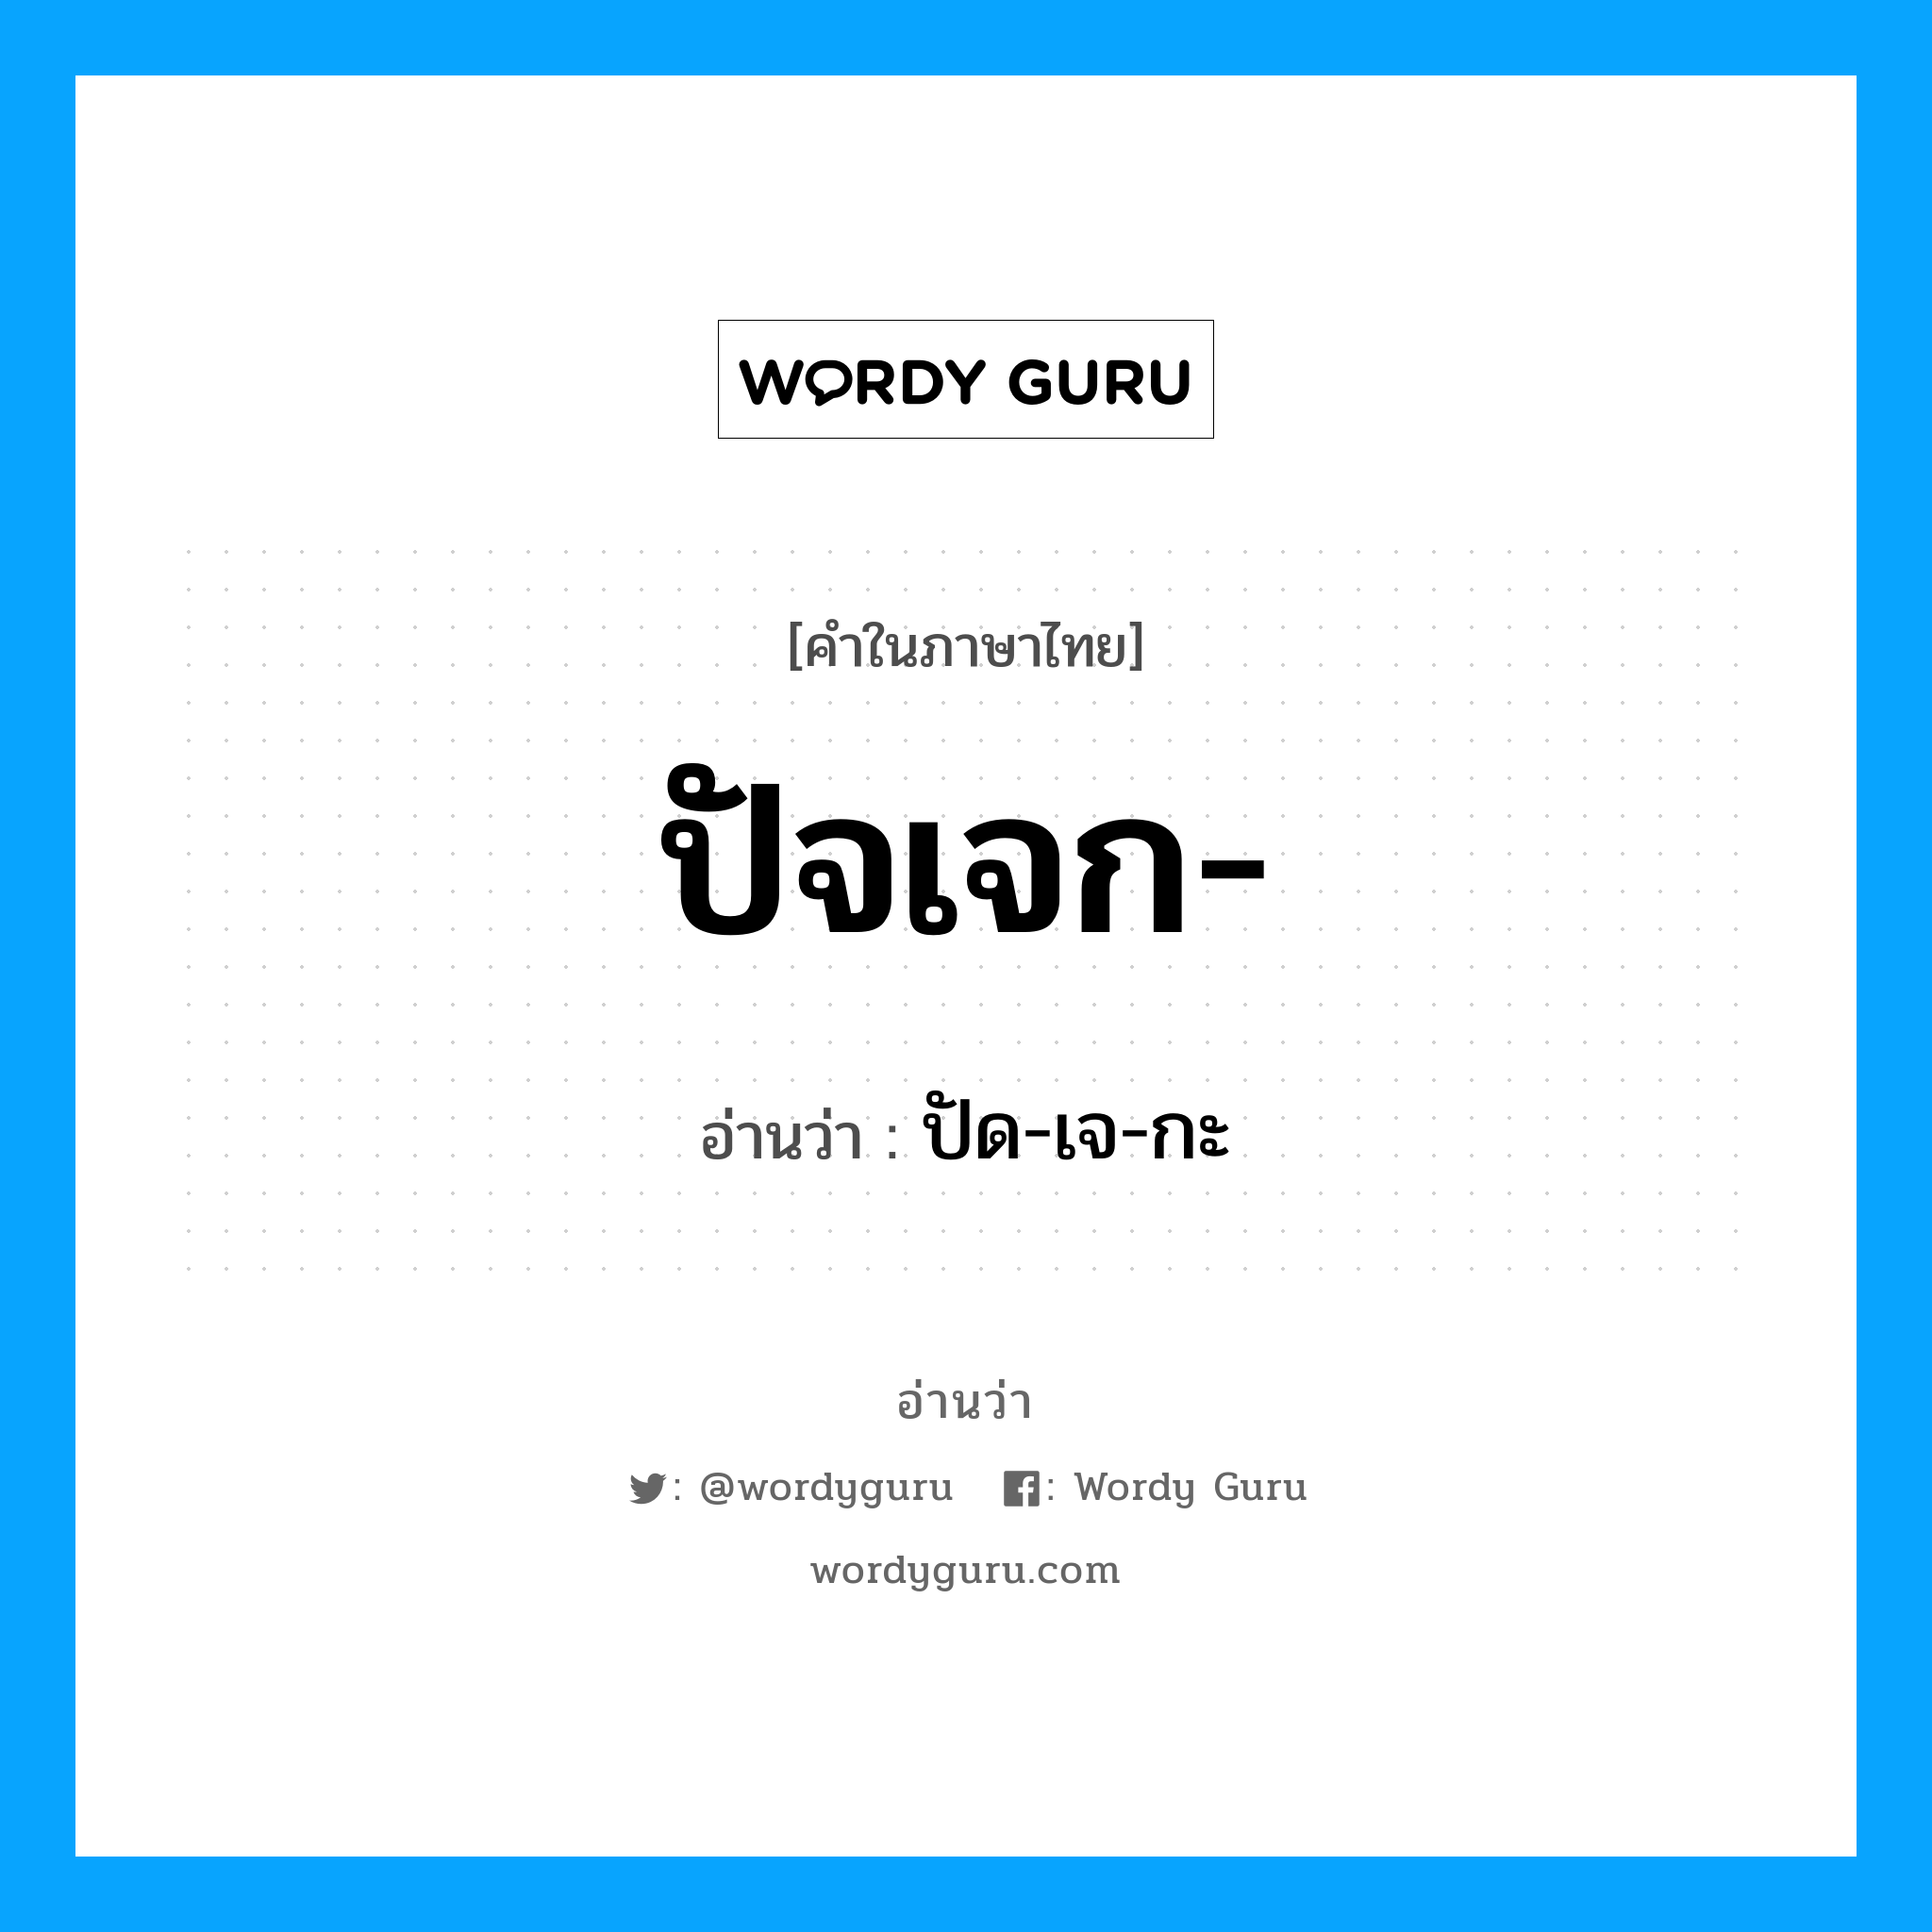 ปัด-เจ-กะ เป็นคำอ่านของคำไหน?, คำในภาษาไทย ปัด-เจ-กะ อ่านว่า ปัจเจก-